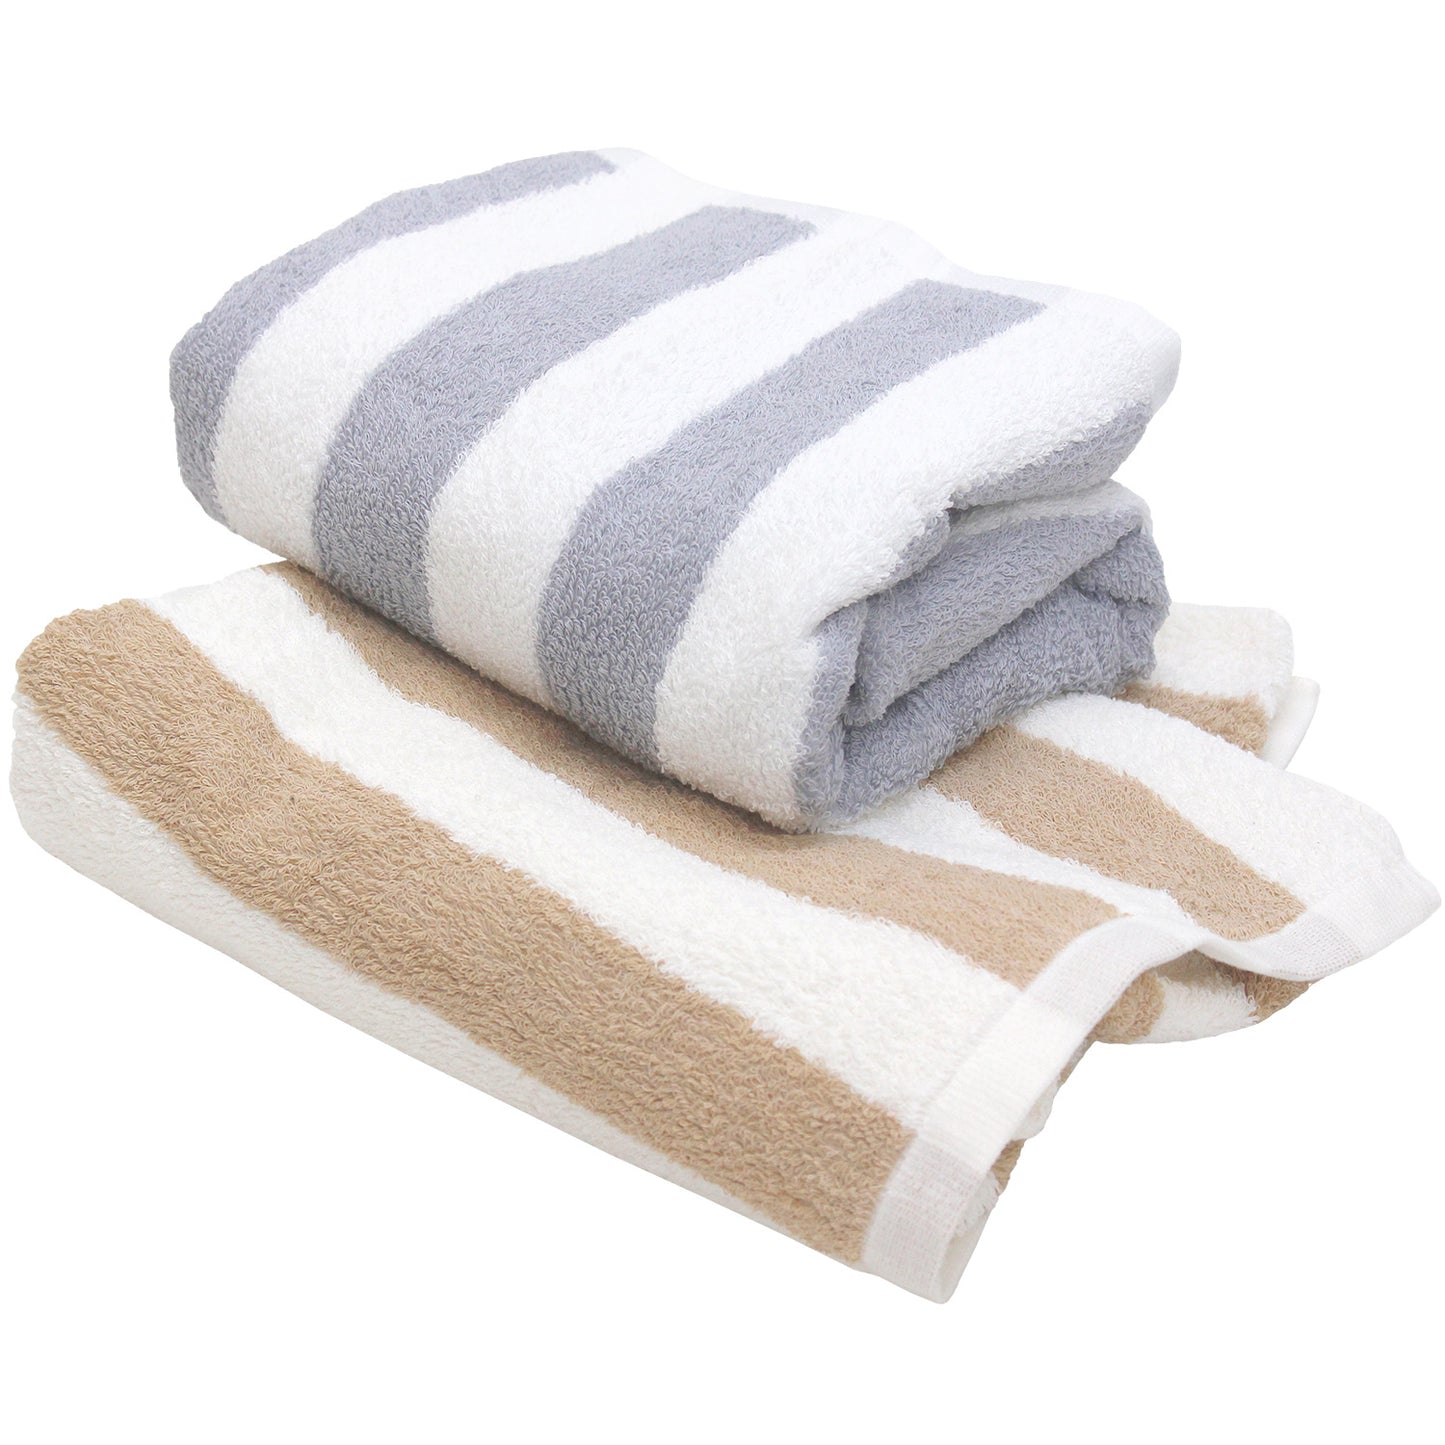 Hiorie Hotel Soft Stripe Wasseraufnahme-Badetuch 2 Blatt Baumwolle 100 % Japan